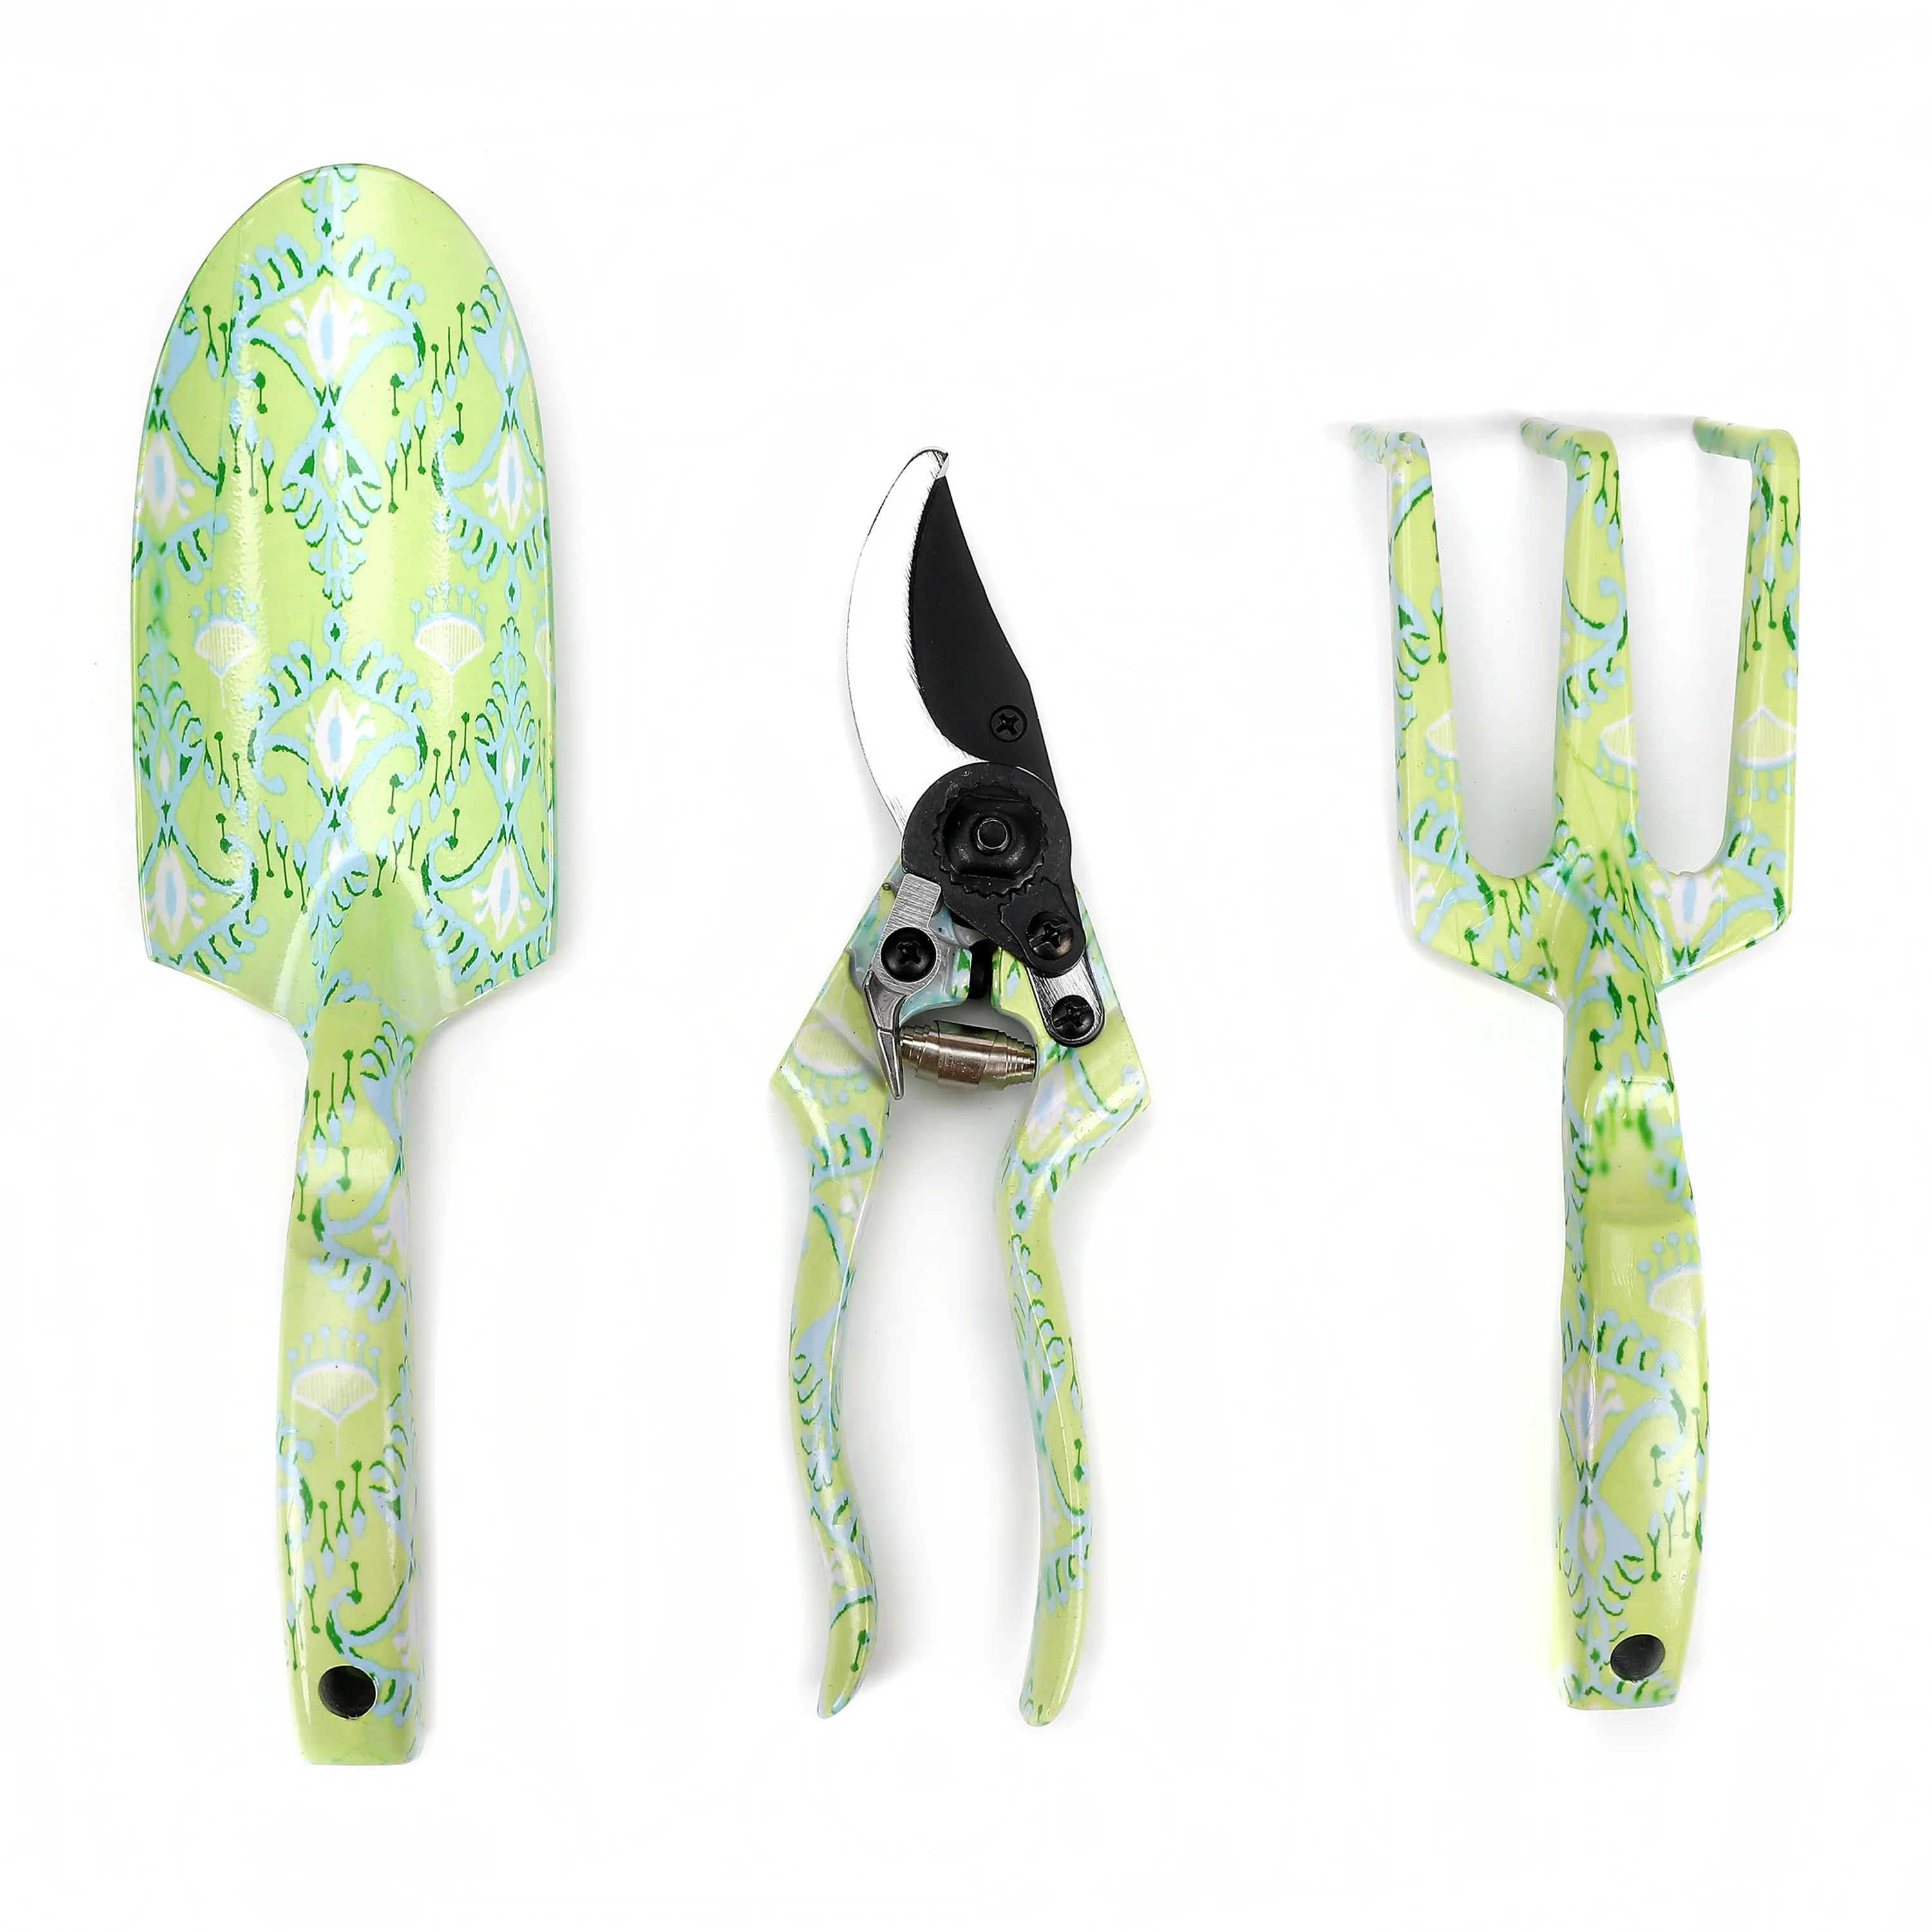 Expert Gardener Green Ikat Gardening Tool Set with Trowel, Cultivator and Pruner - Walmart.com | Walmart (US)